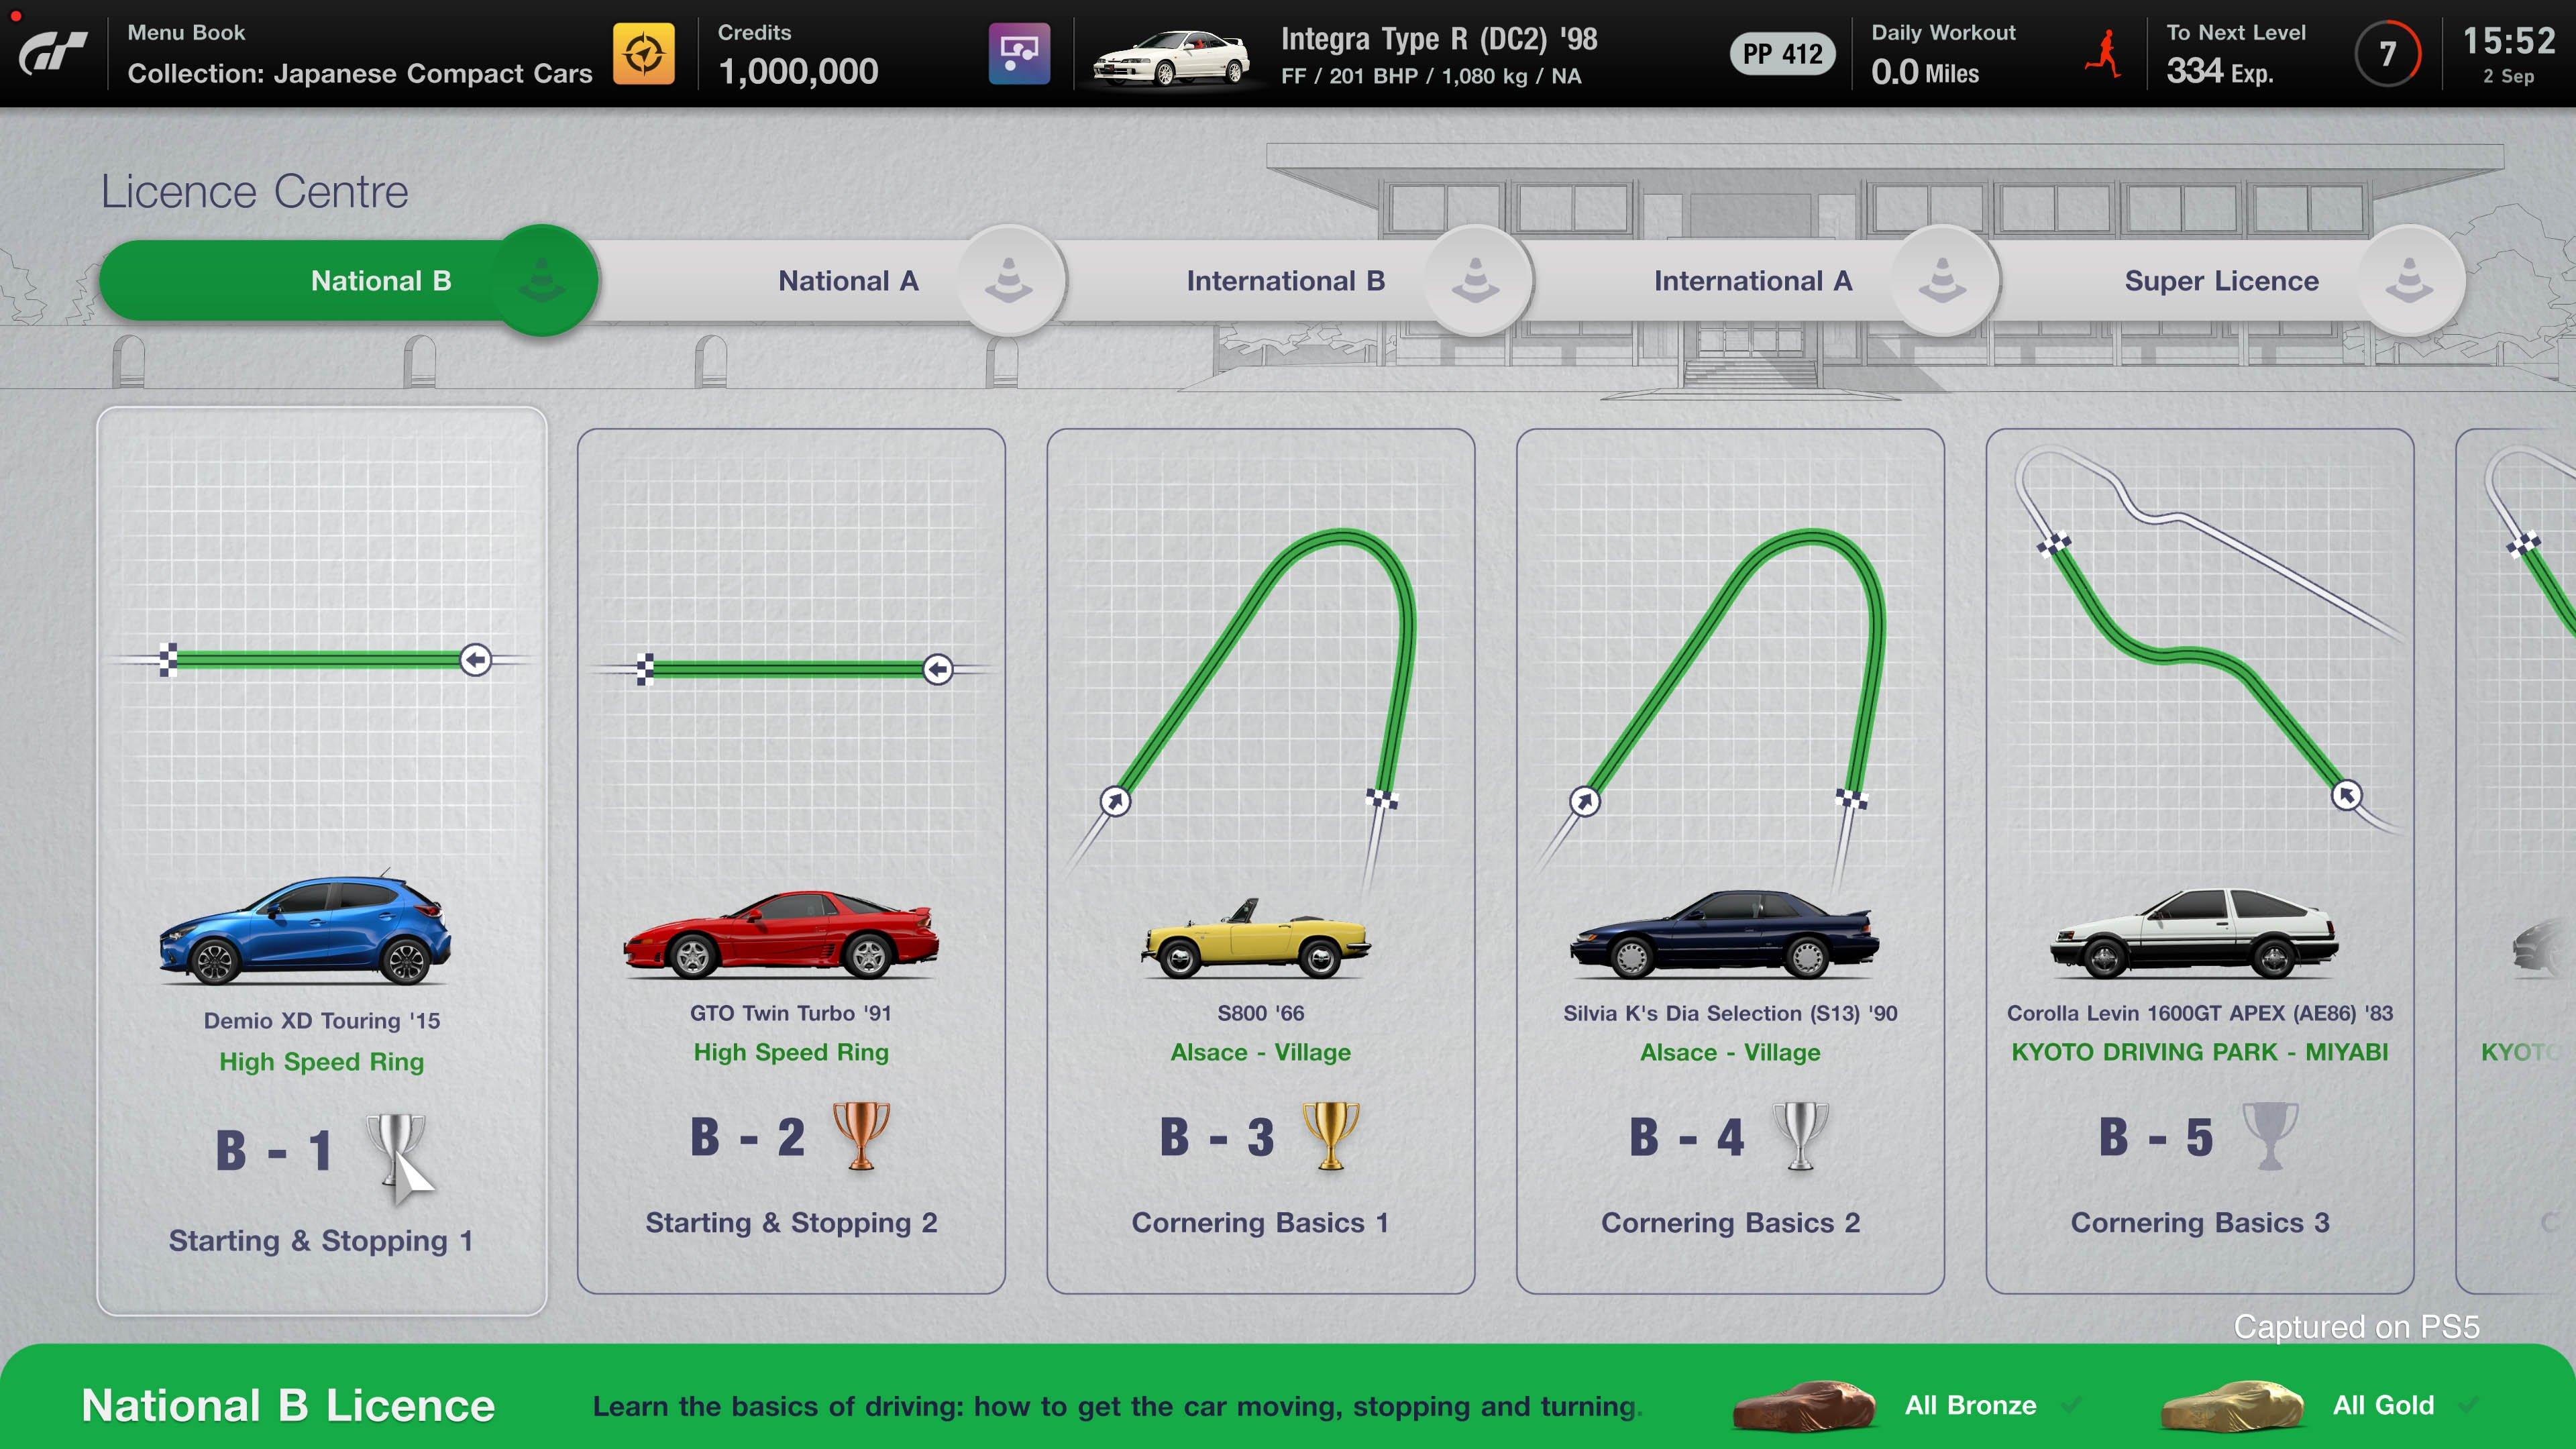 Gran Turismo 7: Anniversary Edition vs Standard?